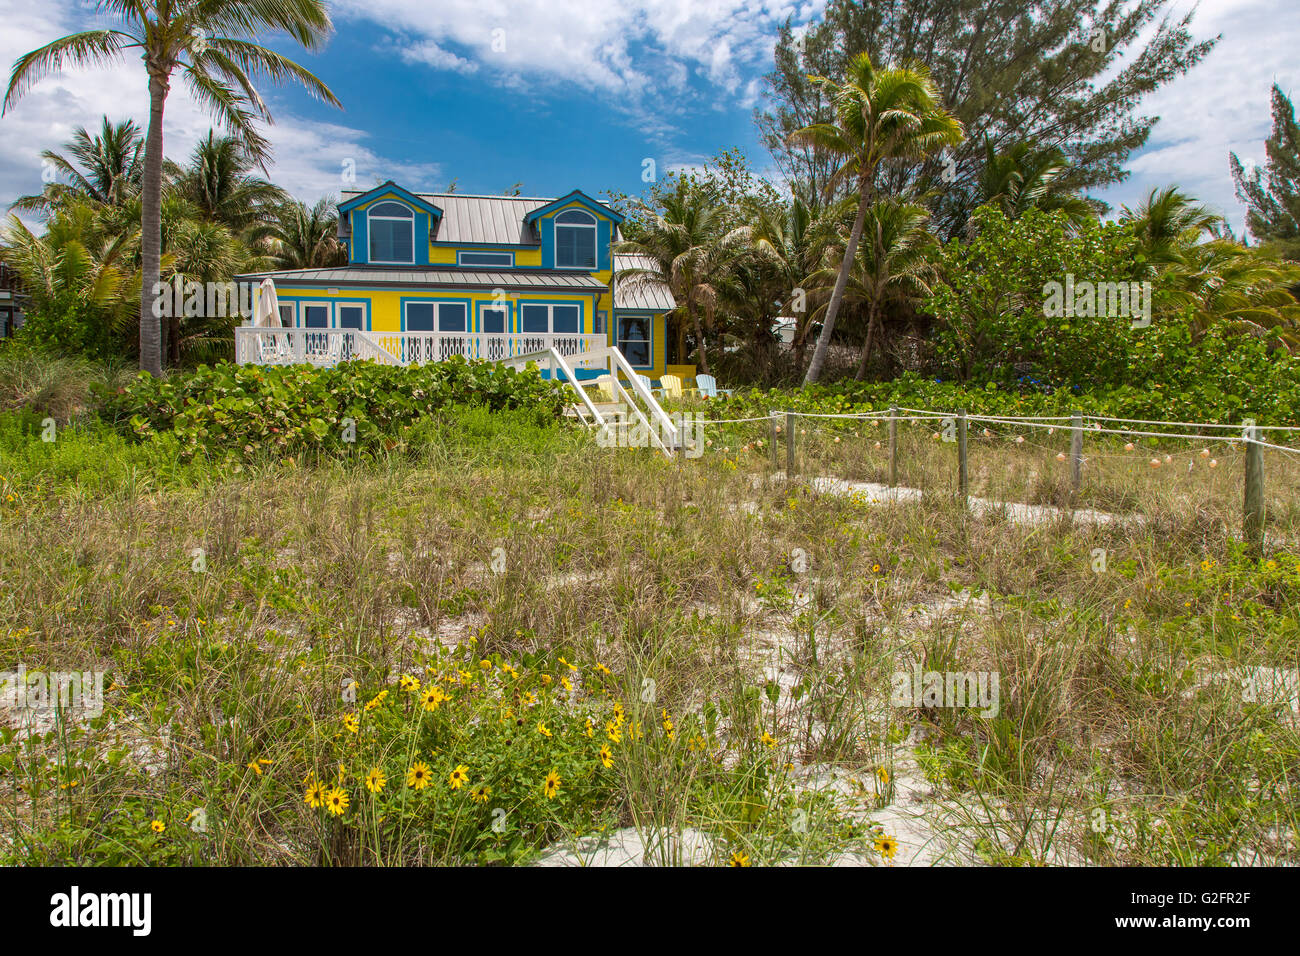 Ferienhaus am Strand am Golf von Mexiko auf Captiva Island, Florida Stockfoto